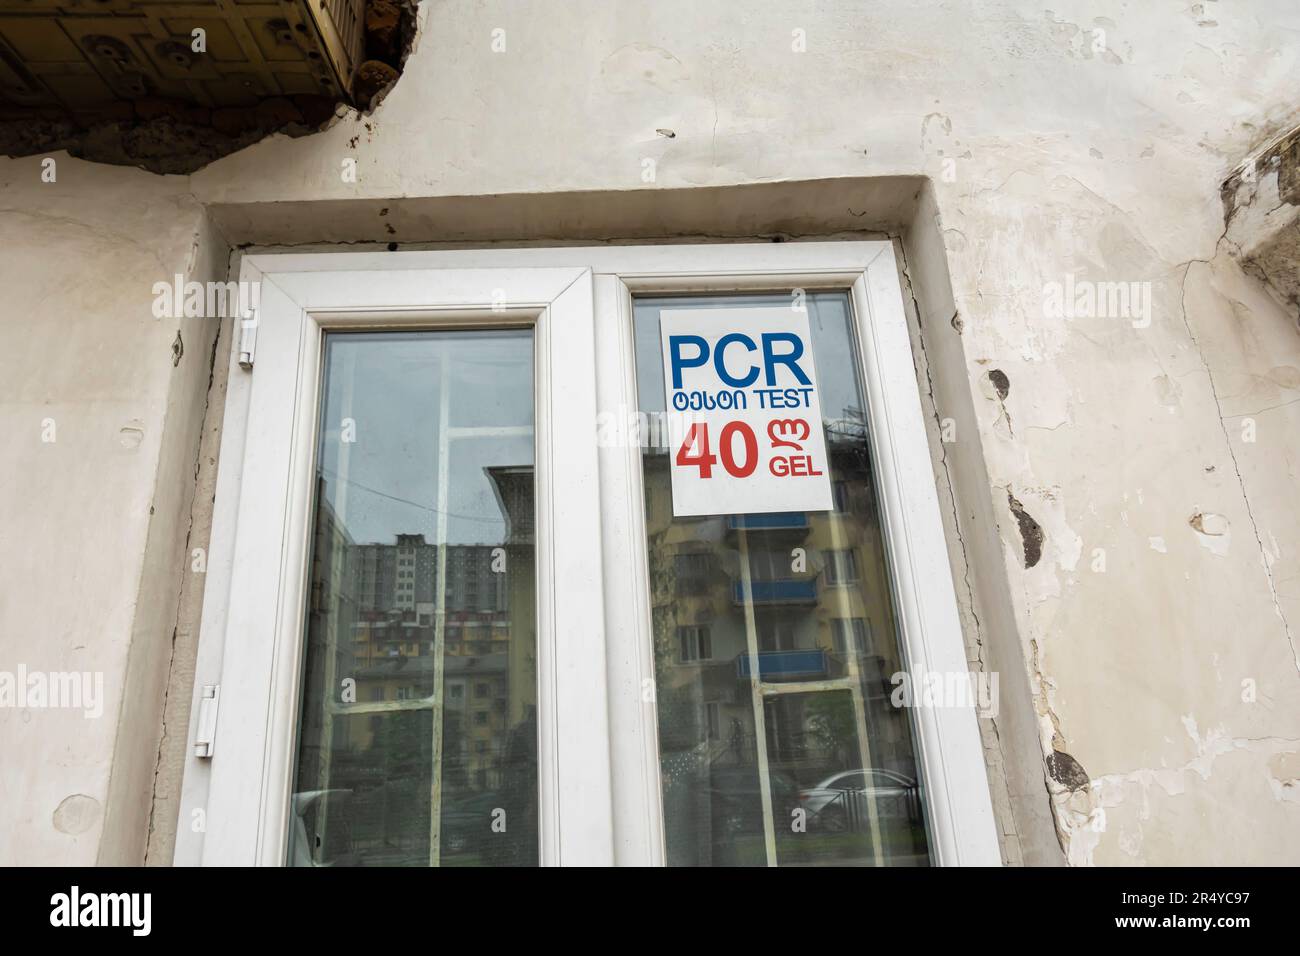 Étiquette d'affiche pour fenêtre DE GEL de test PCR 40. Signes d'une pandémie de Covid ancienne à Batumi en Géorgie Banque D'Images